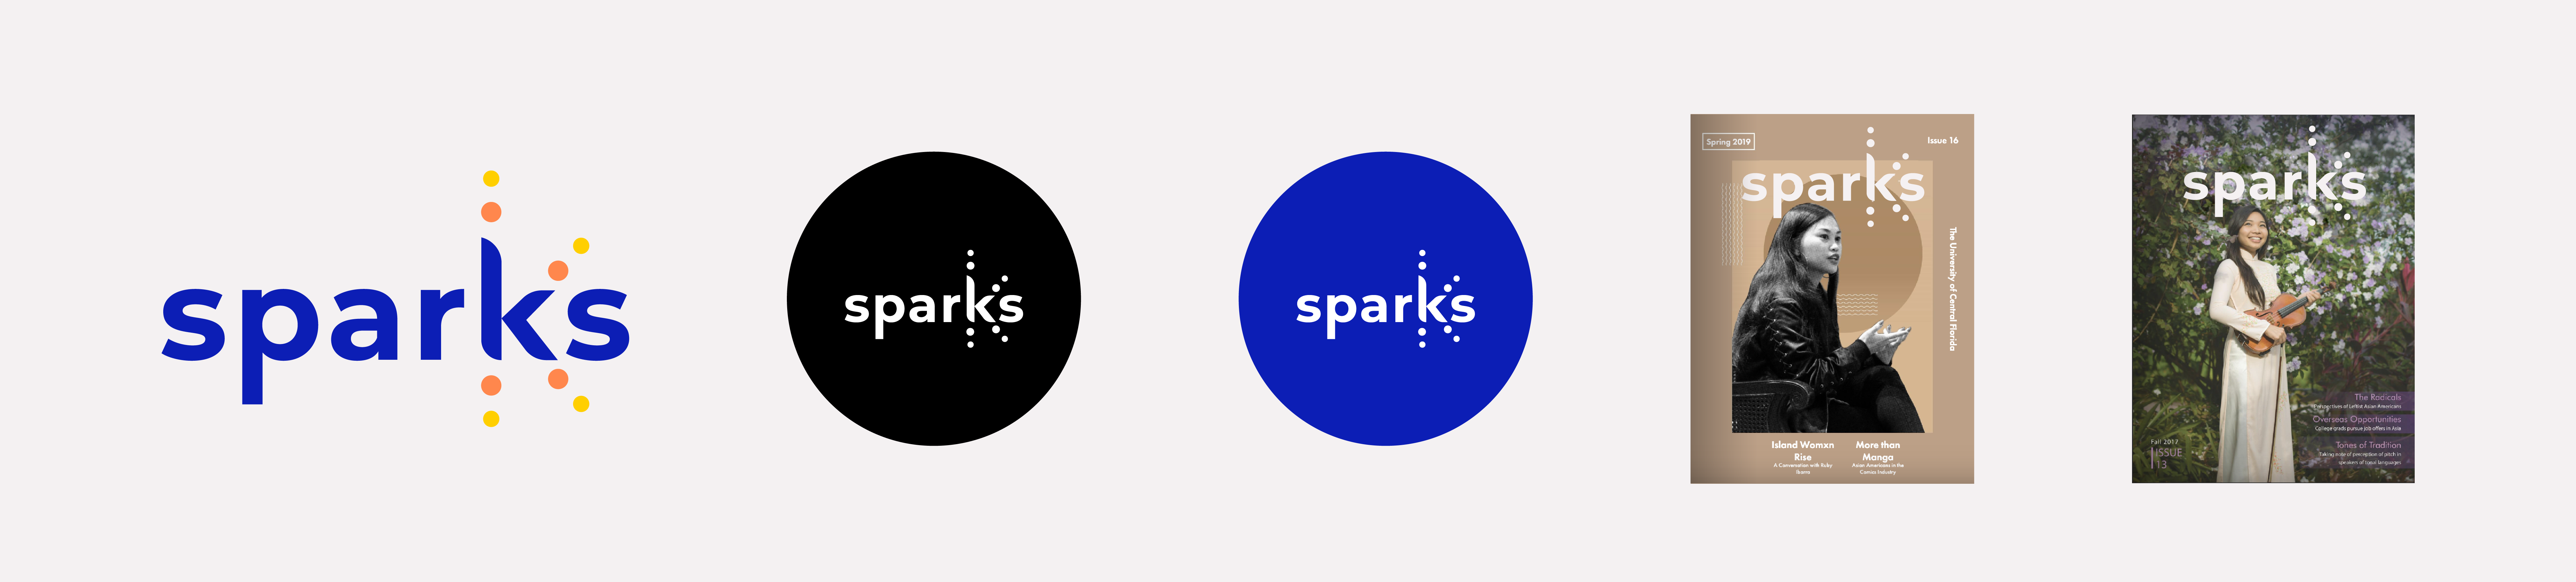 Sparks_portfolio_firstproposal-05-1